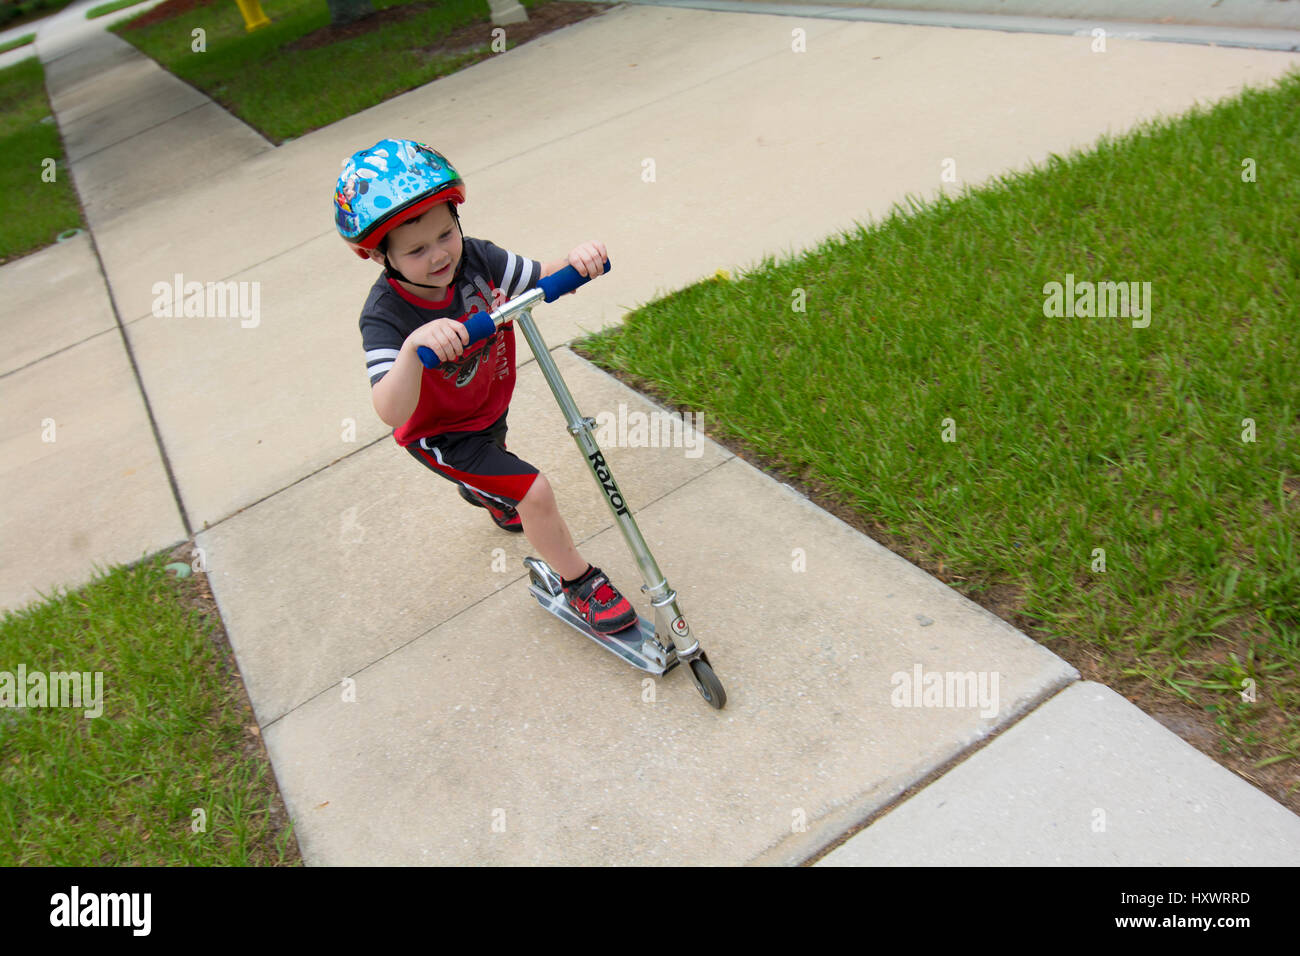 Young boy riding scooter avec casque sur Banque D'Images